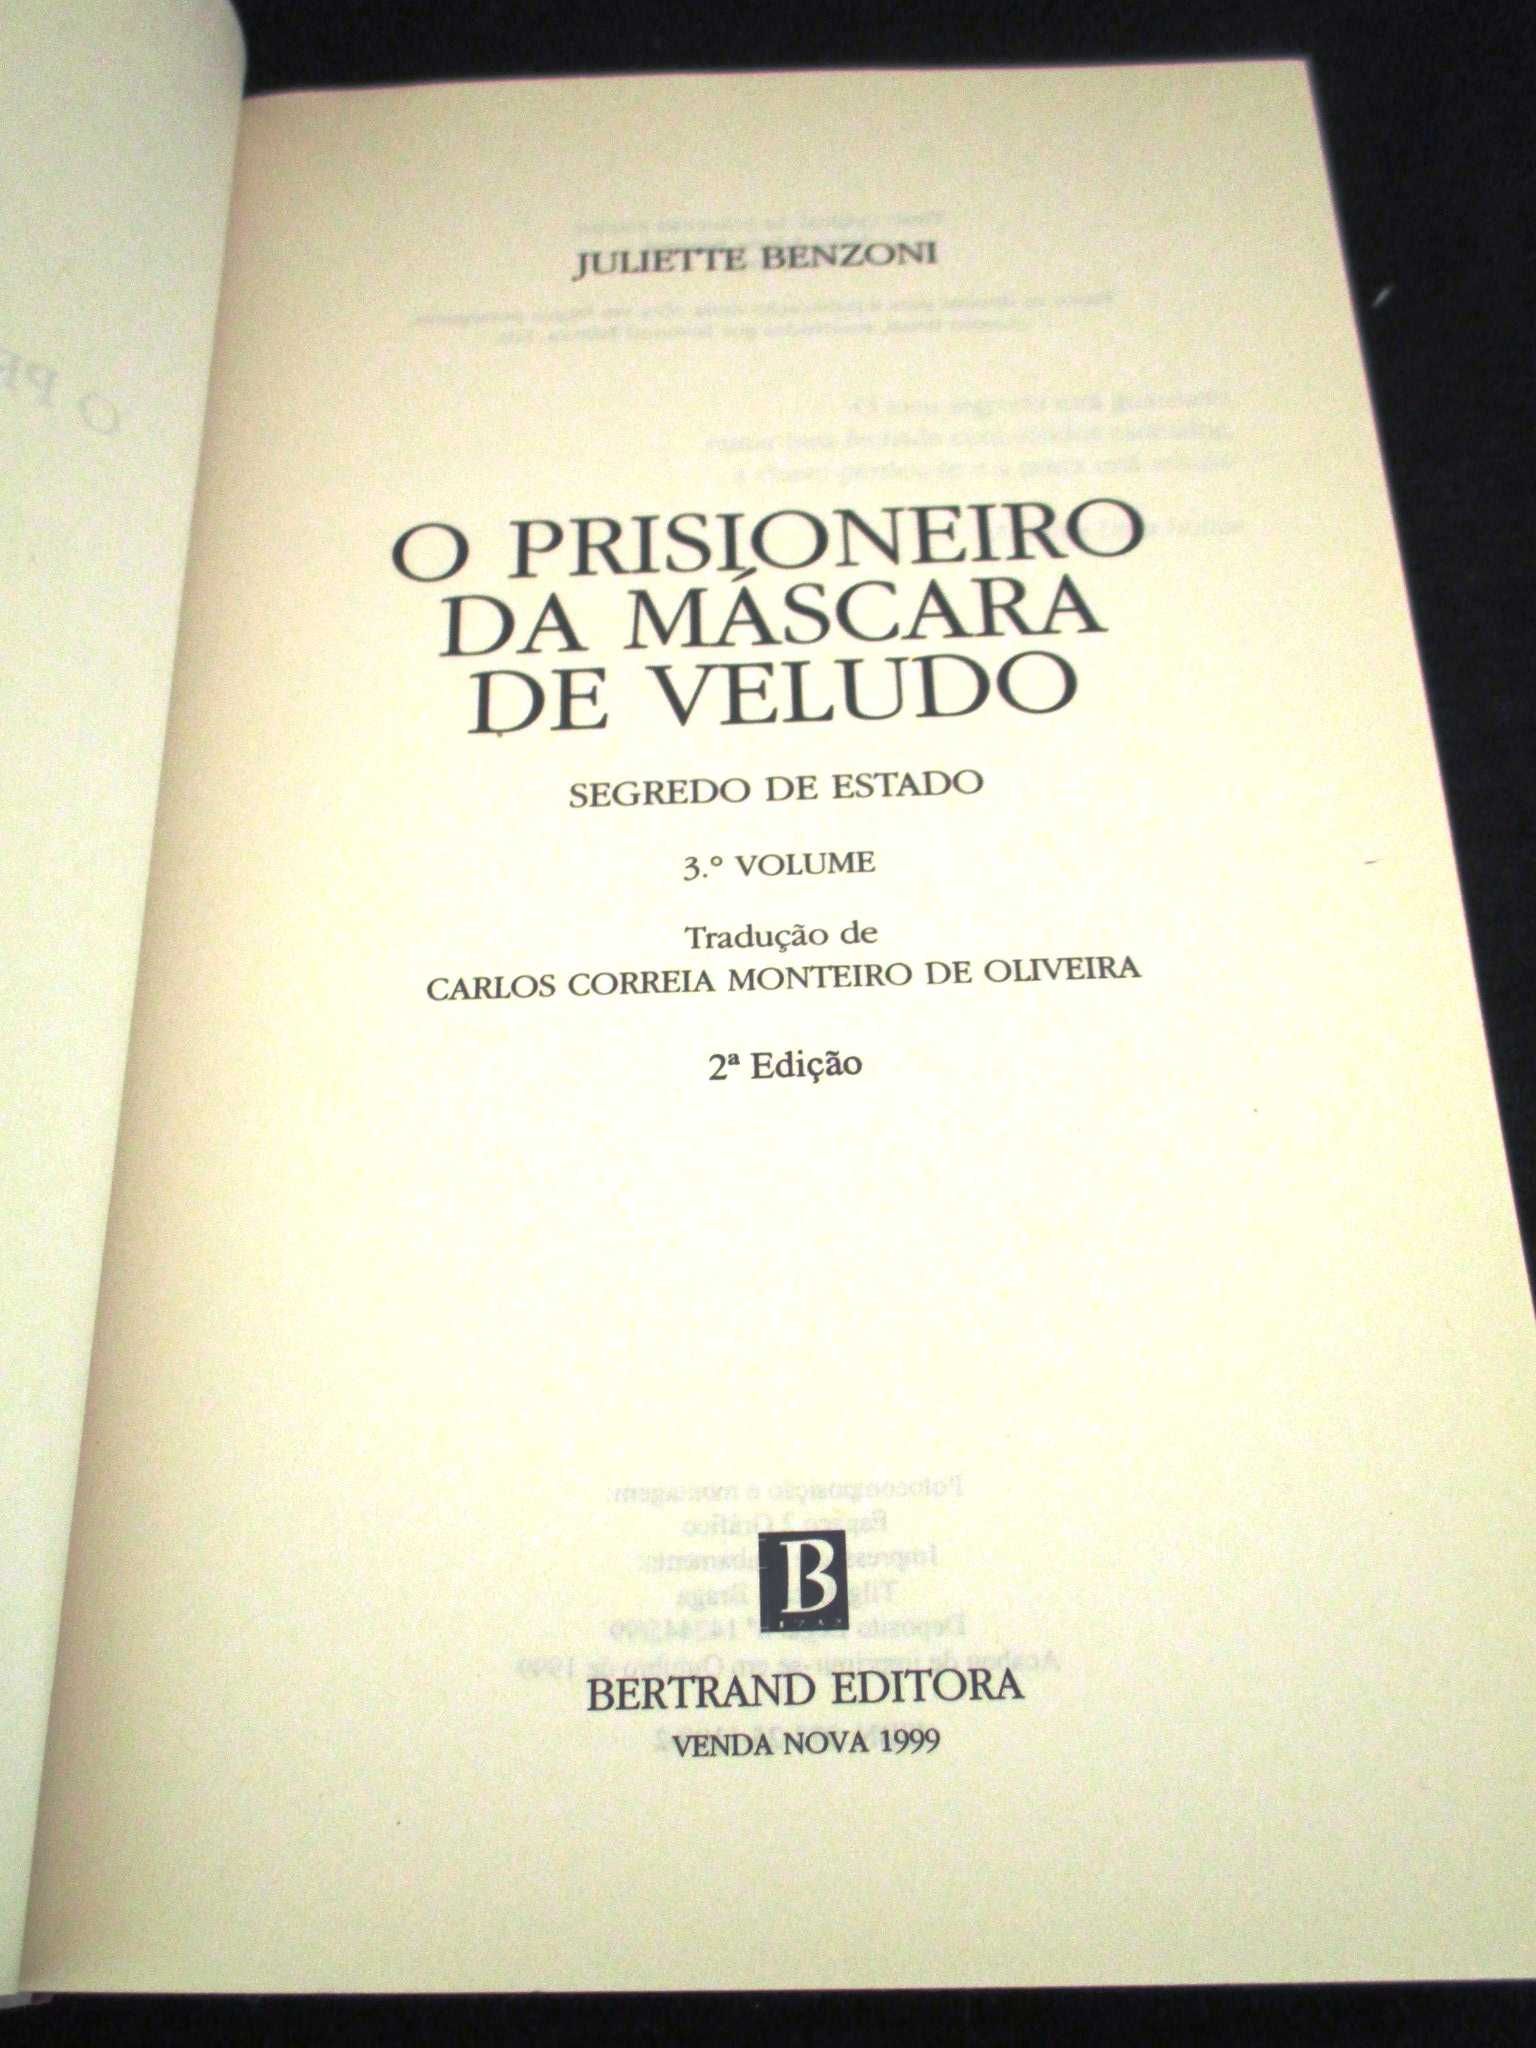 Livros Trilogia Segredo de Estado Juliette Benzoni Completa